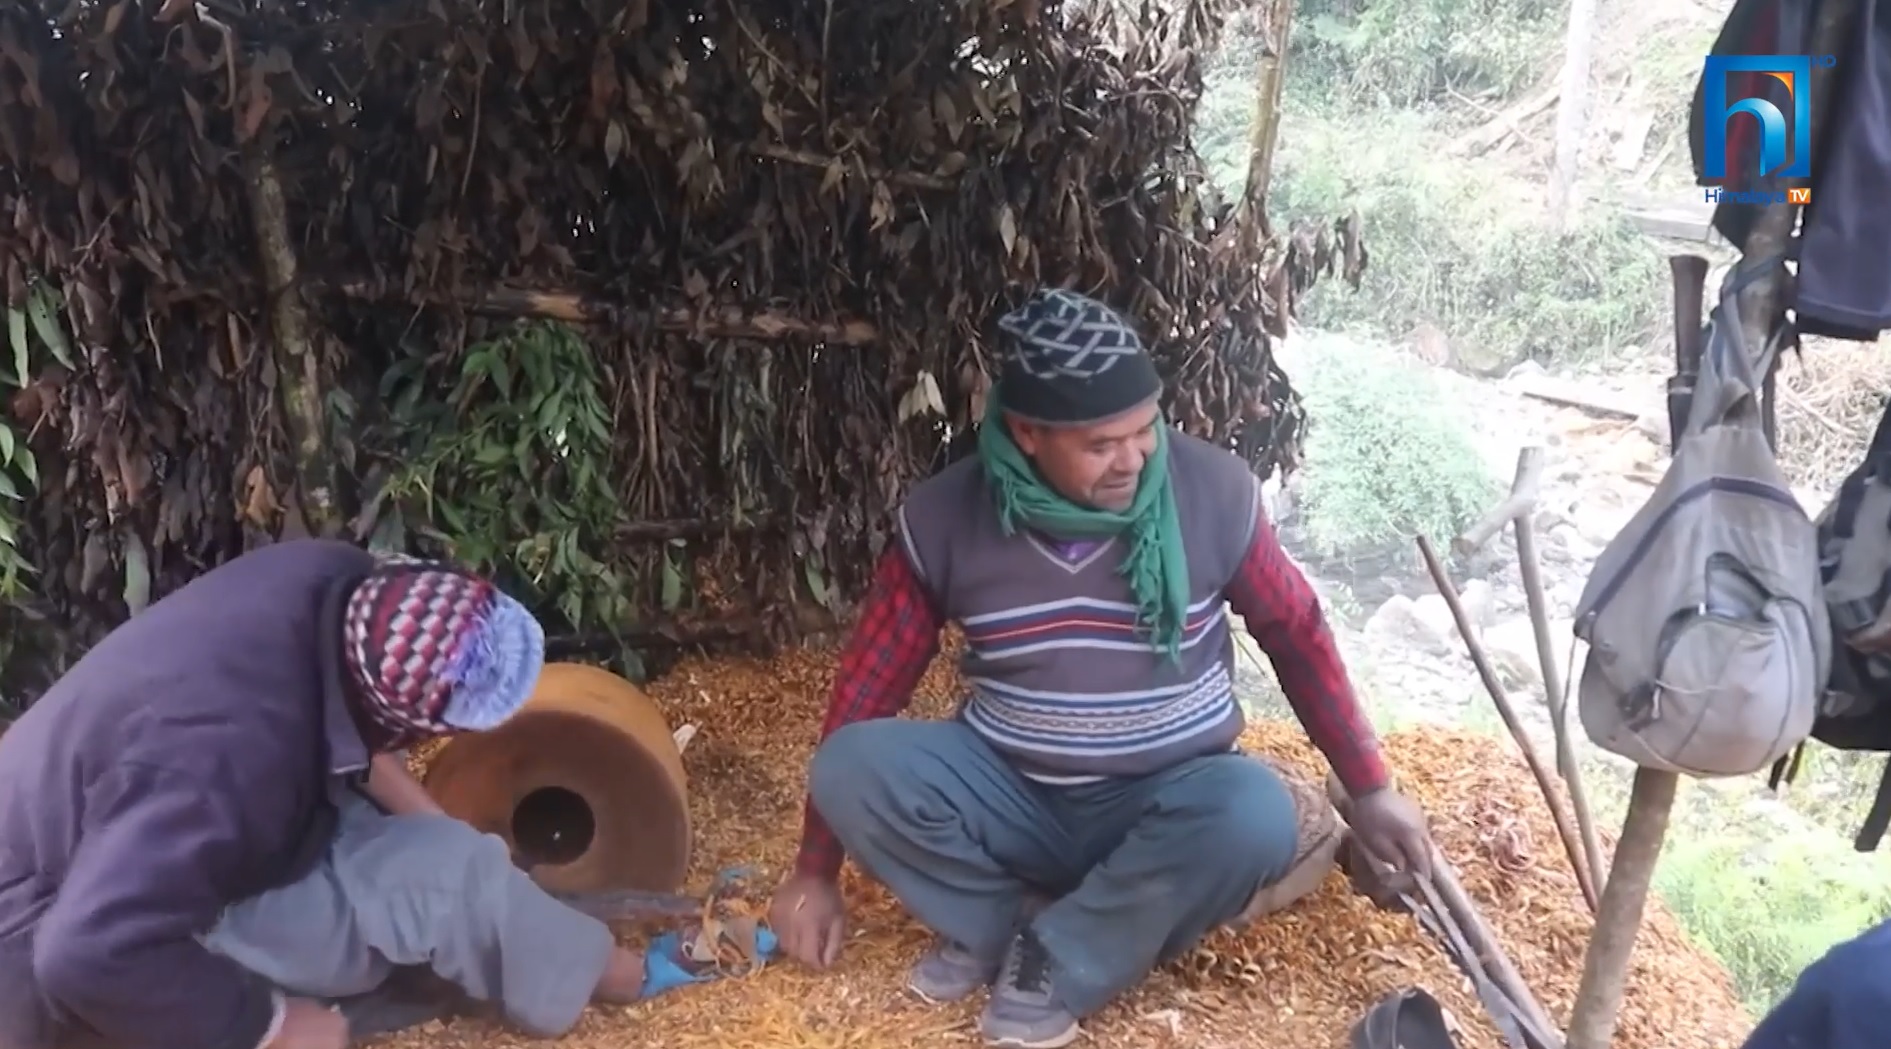 काठको ठेकी बनाउने चँदरा पेशा संकटमा (भिडियो रिपोर्टसहित)